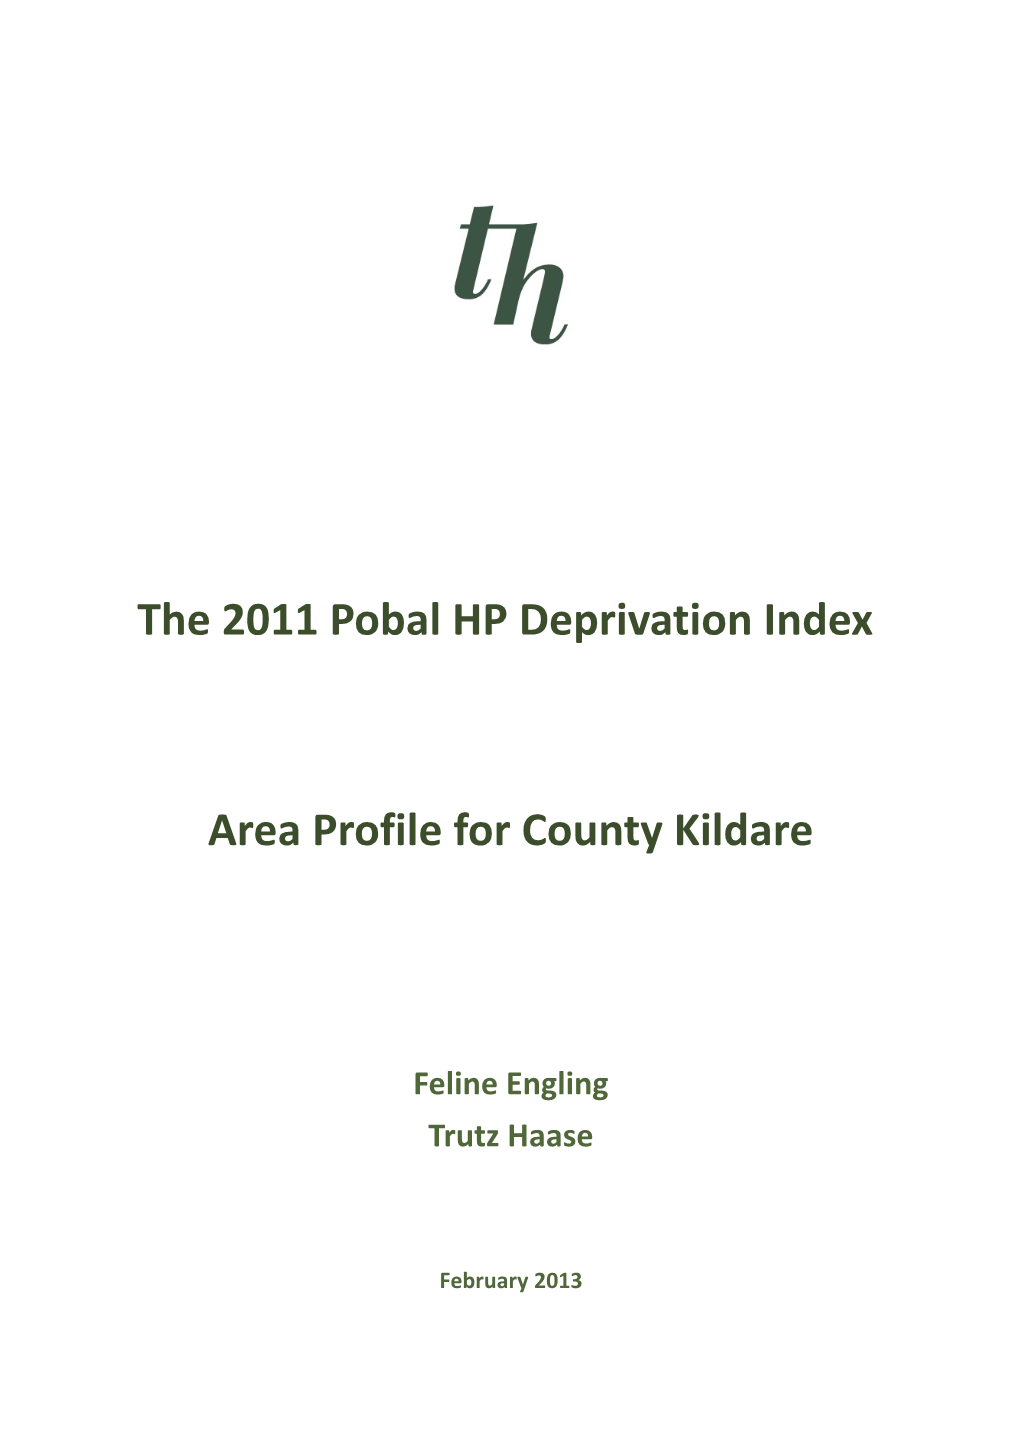 Area Profile for County Kildare